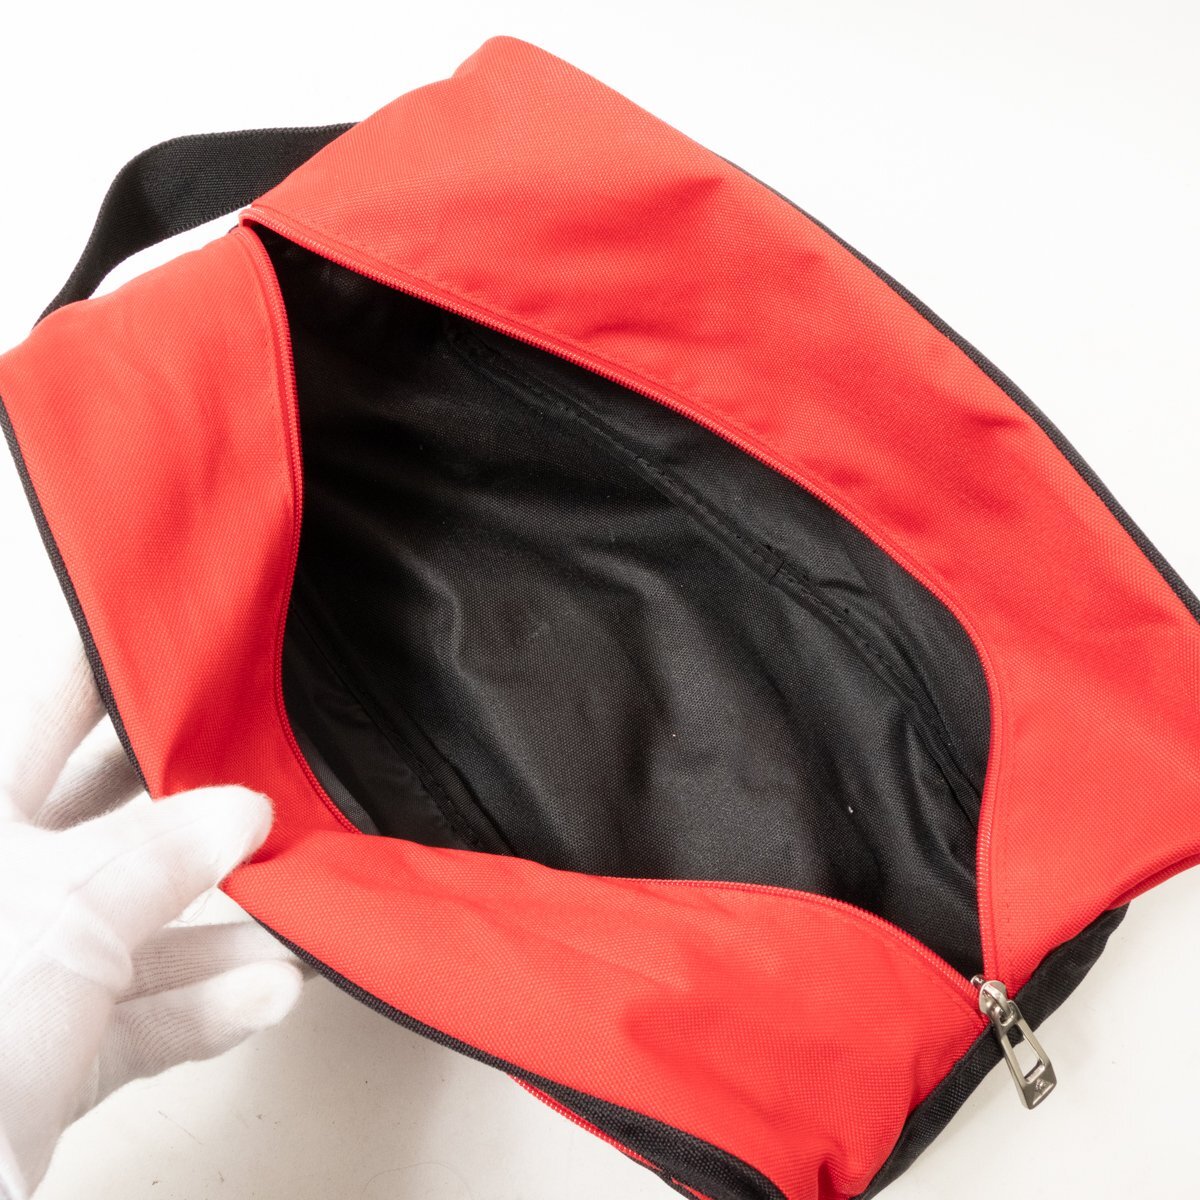 le coq sportif Le Coq s Porte .f сумка для обуви черный чёрный красный красный нейлон унисекс для мужчин и женщин Golf спорт bag сумка 